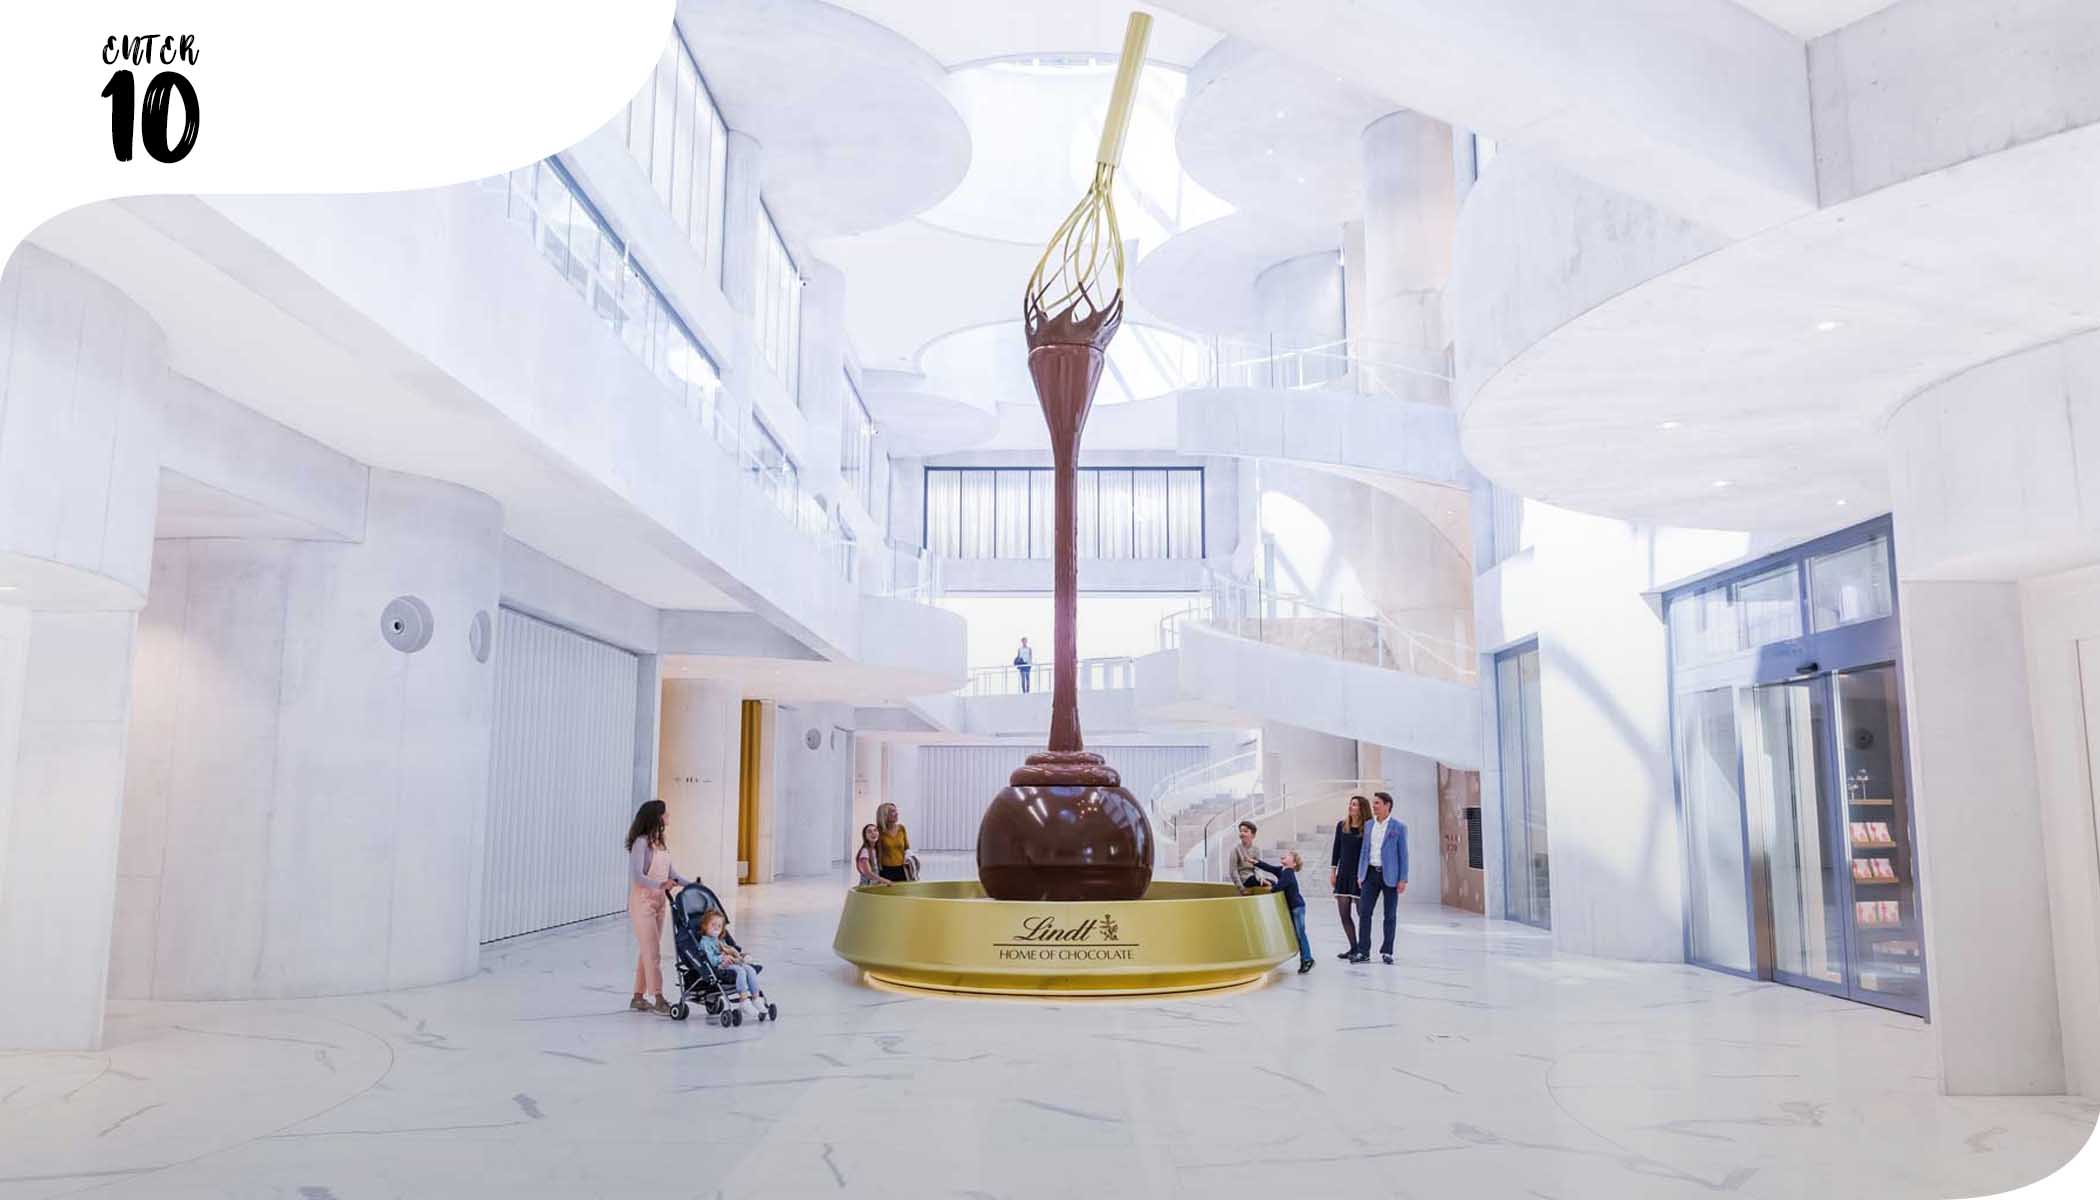 Lindt открывает крупнейший в мире музей шоколада с самым большим шоколадным фонтаном в мире